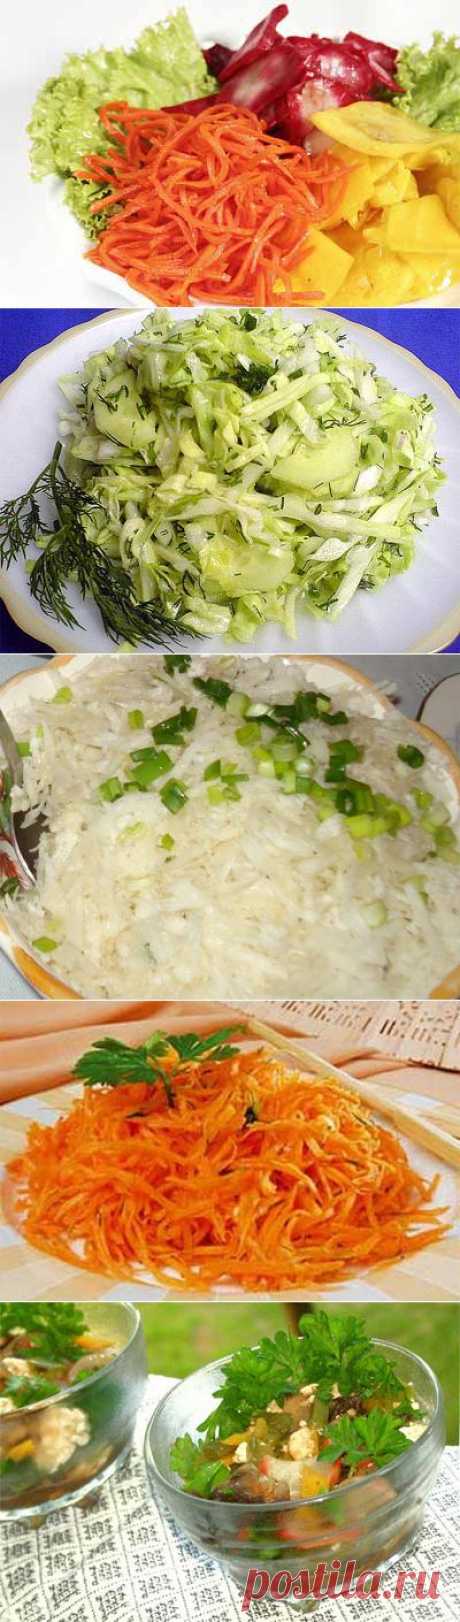 Салаты корейские и особенности корейской кухни с рецептами